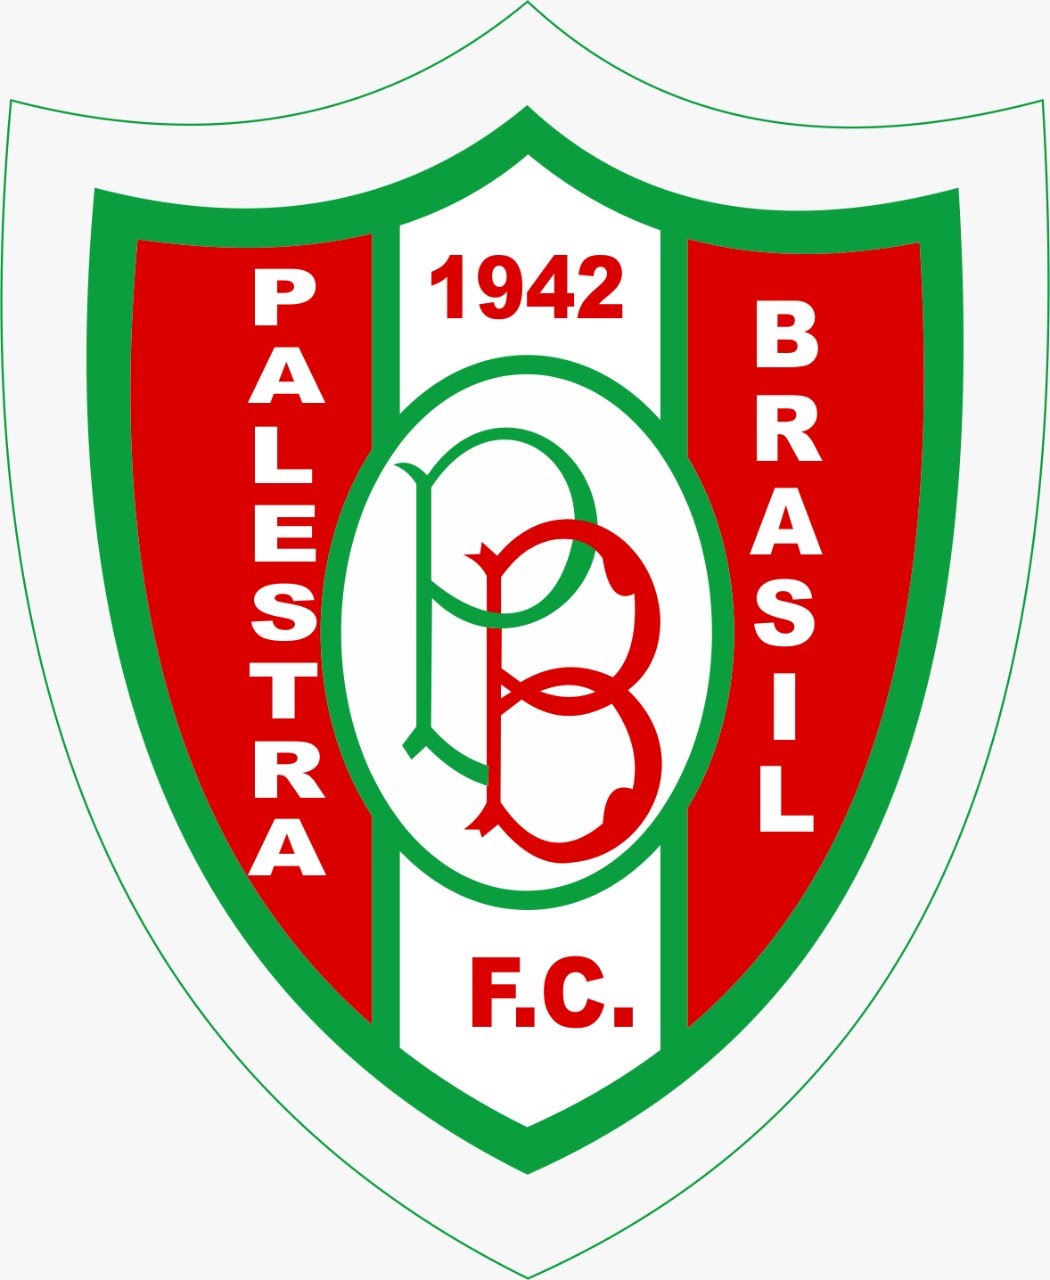 Palestra Brasil FC